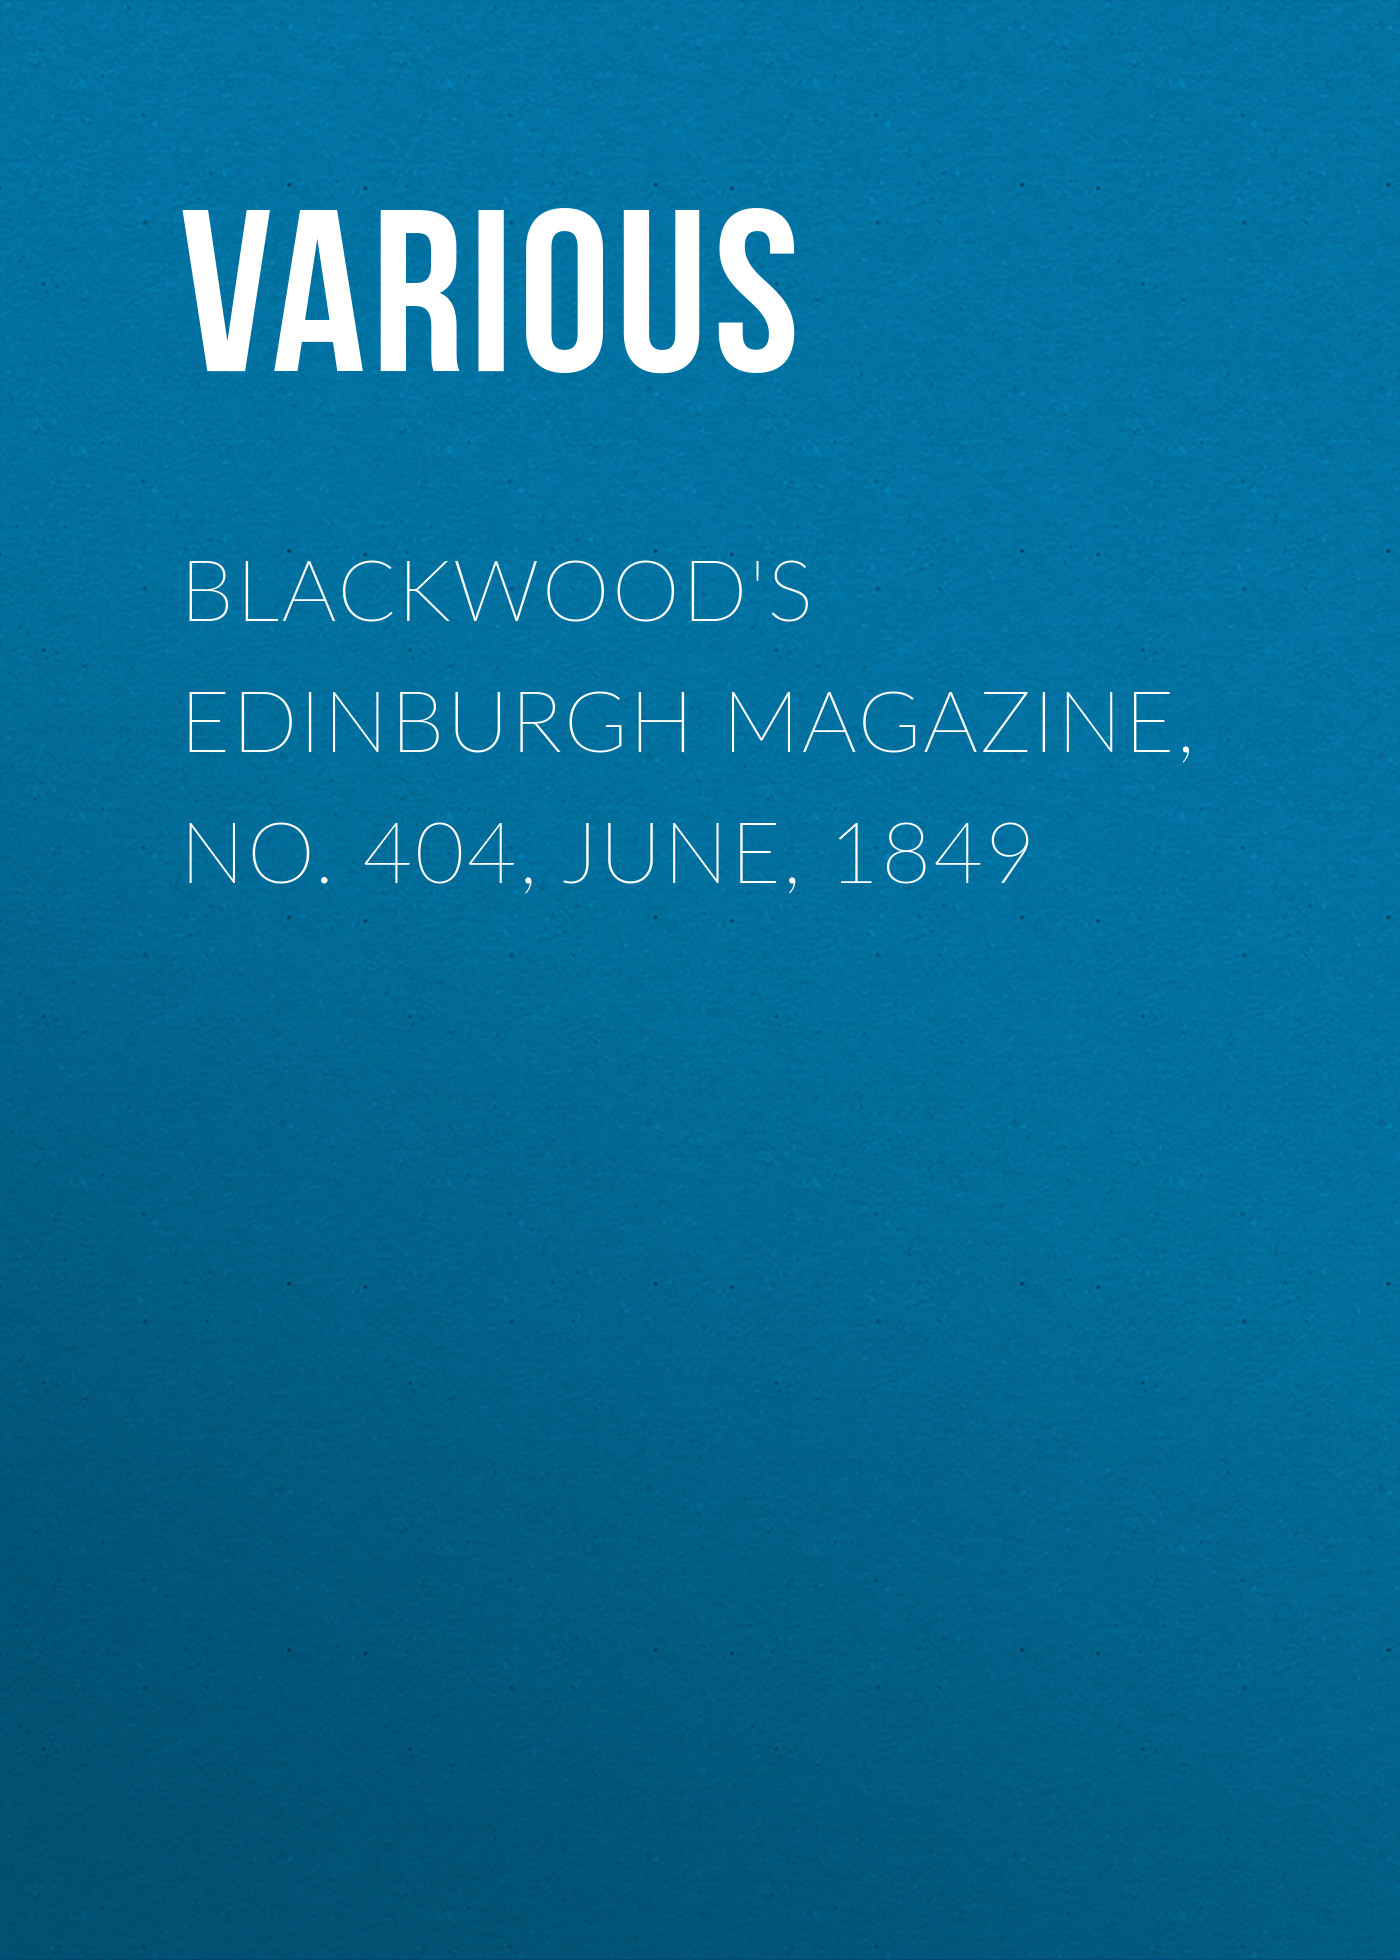 Книга Blackwood's Edinburgh Magazine, No. 404, June, 1849 из серии , созданная  Various, может относится к жанру Журналы, Зарубежная образовательная литература, Книги о Путешествиях. Стоимость электронной книги Blackwood's Edinburgh Magazine, No. 404, June, 1849 с идентификатором 25569343 составляет 0 руб.